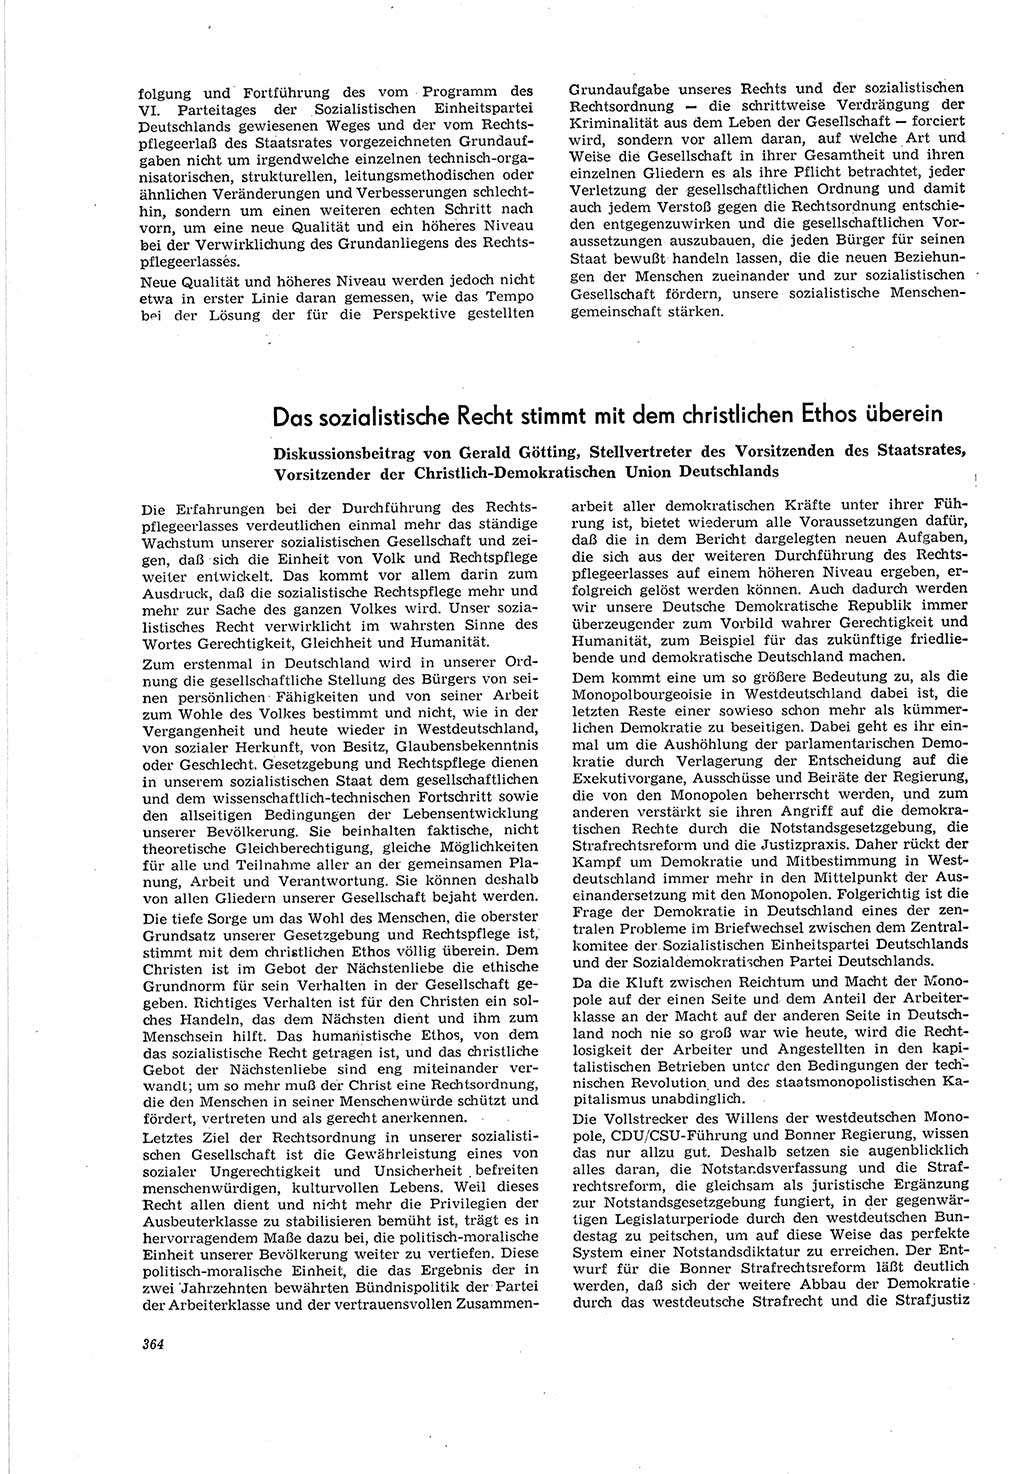 Neue Justiz (NJ), Zeitschrift für Recht und Rechtswissenschaft [Deutsche Demokratische Republik (DDR)], 20. Jahrgang 1966, Seite 364 (NJ DDR 1966, S. 364)